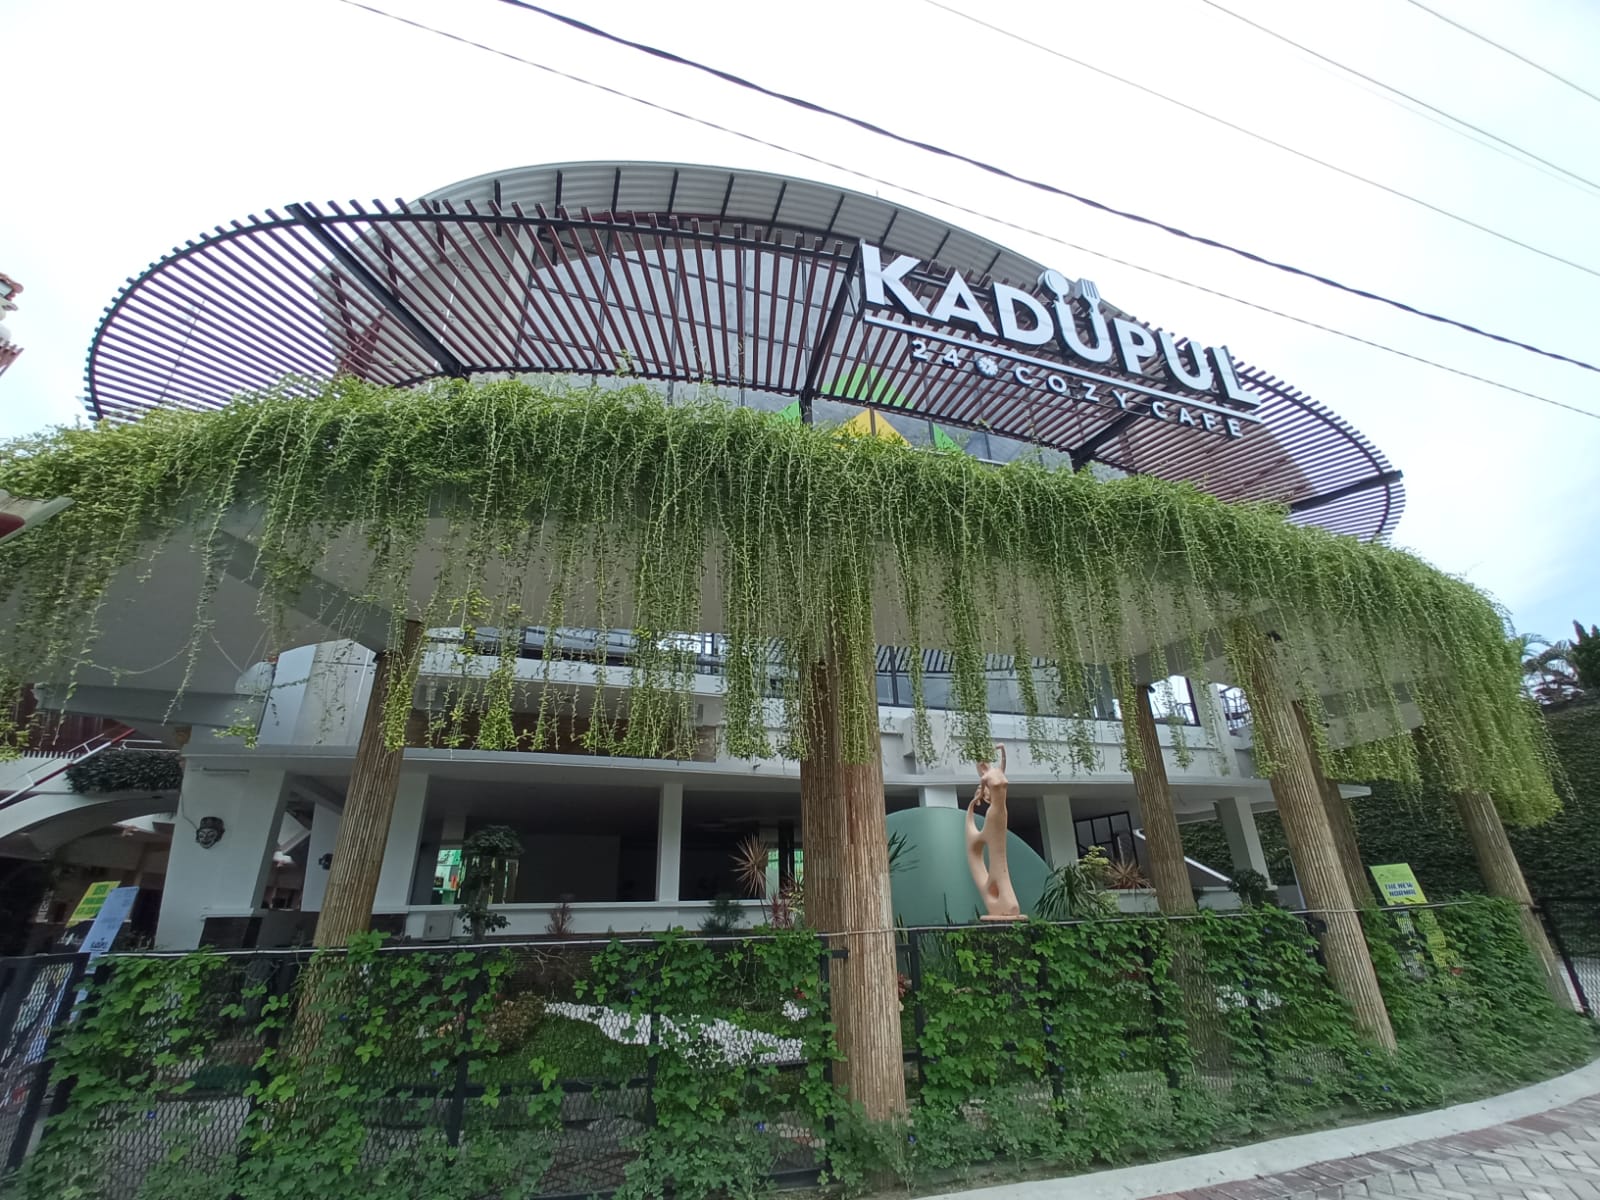 Kadupul Cafe